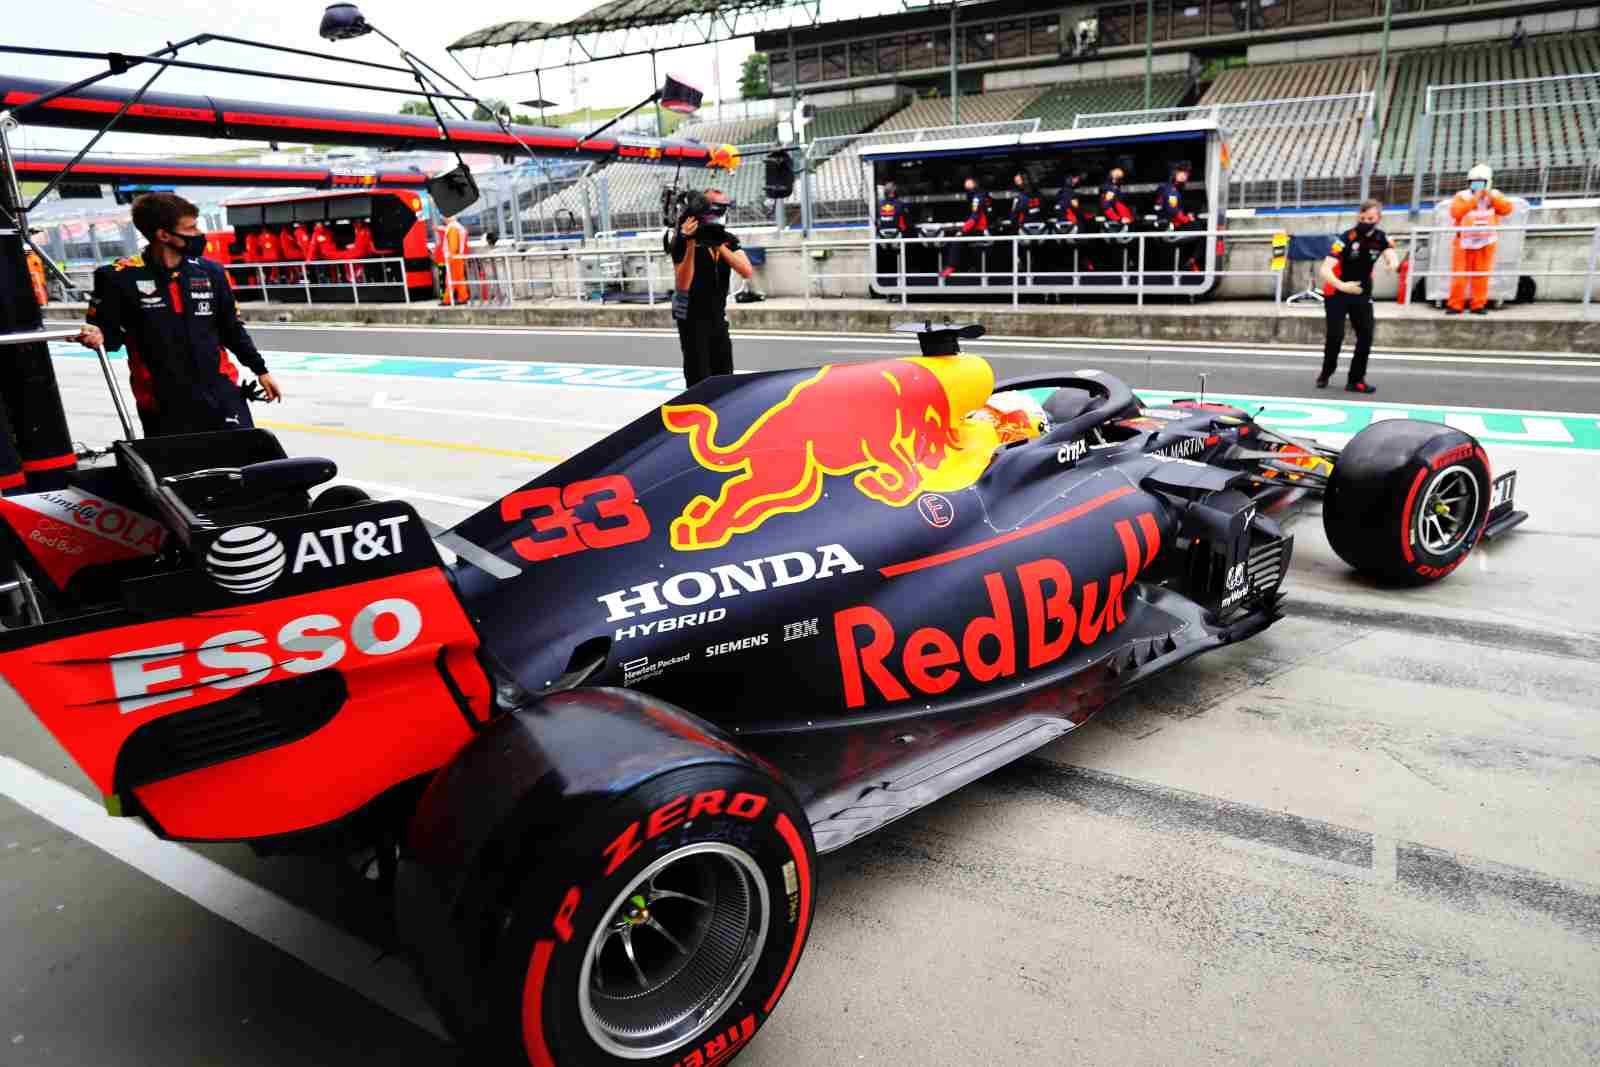 Формула 1 год основания. Red bull Honda f1. Машина Red bull f1 2021. Ф1 Макс Ферстаппен. Red bull Racing f1.